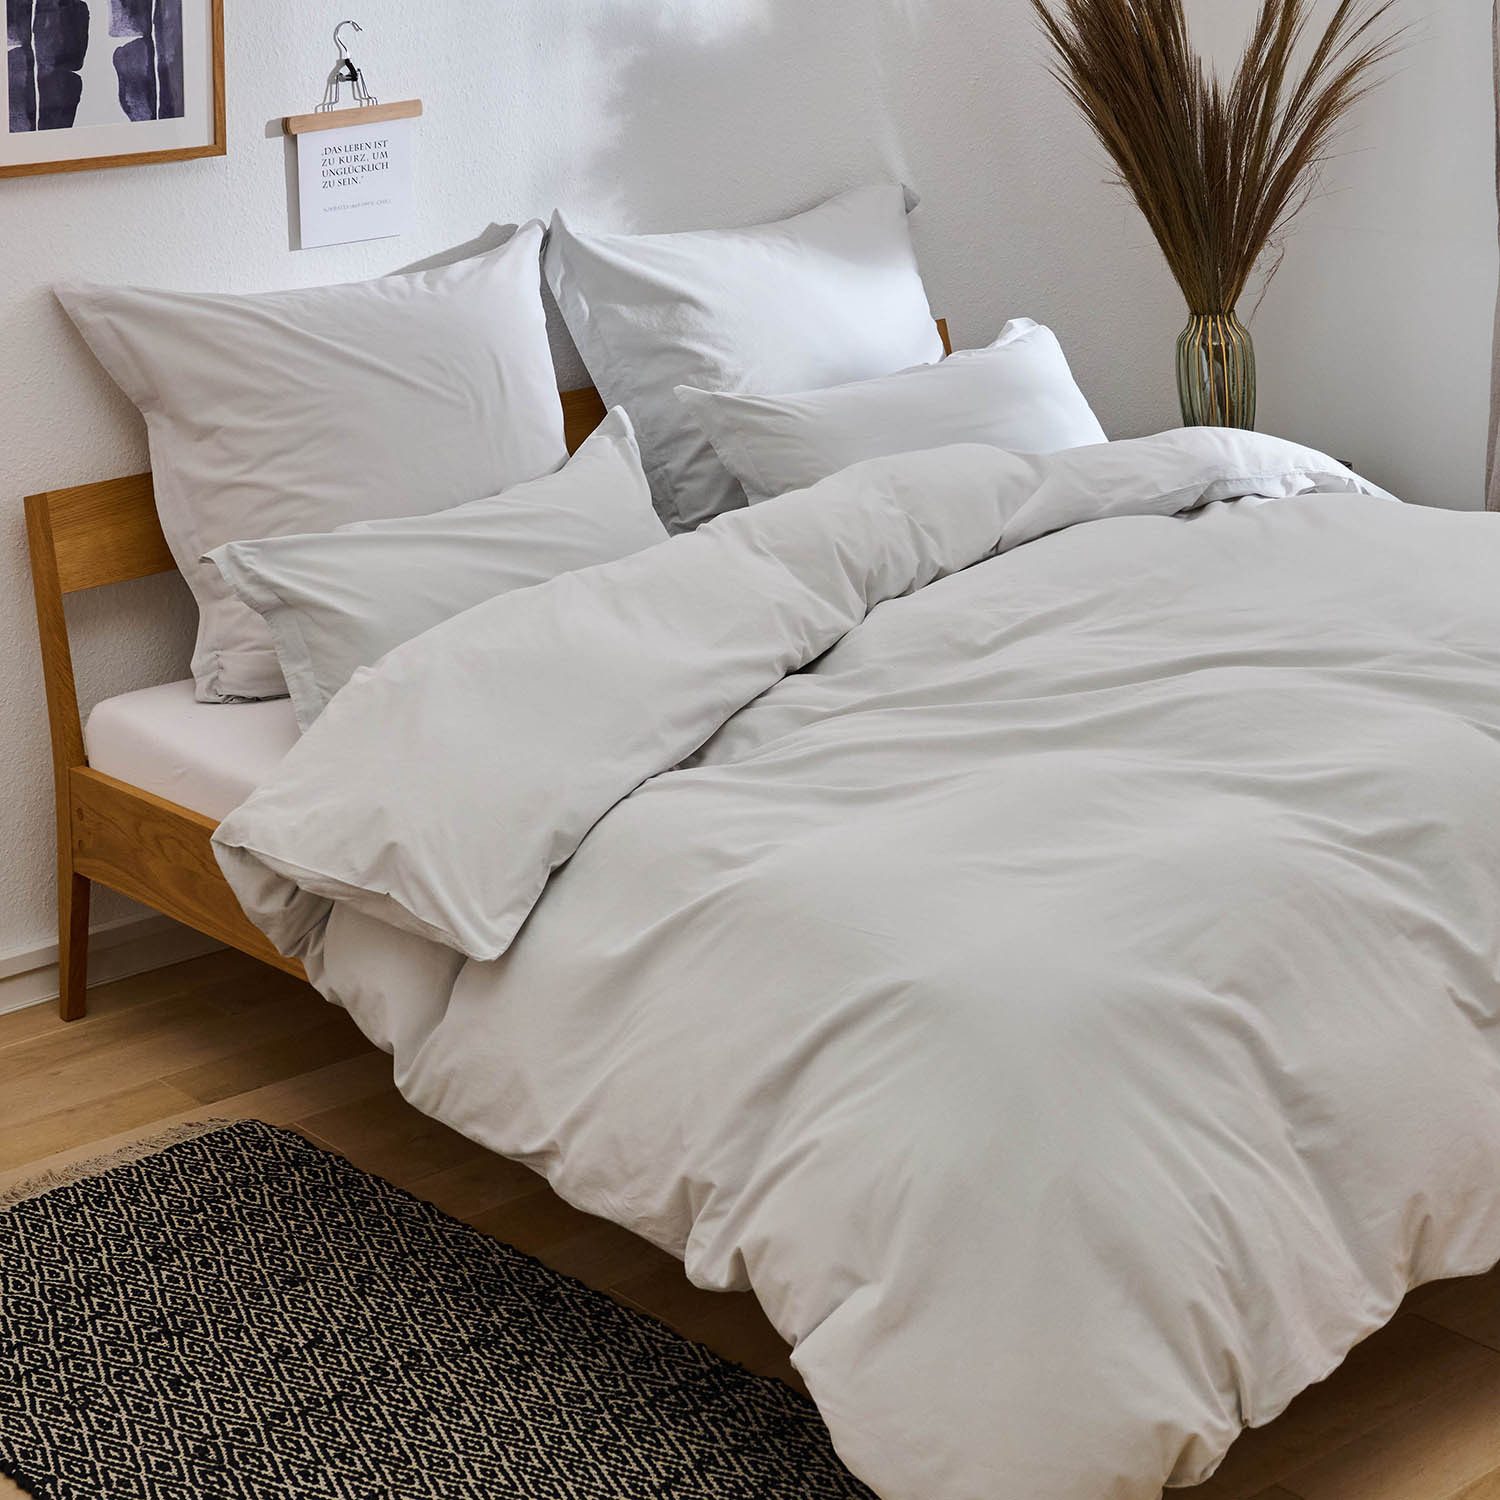 Bettwäsche Bettwäsche aus 100% Baumwolle mit Kissenbezug, Blumtal, Oeko-TEX zertifizierte Bettwäsche in Leinen Optik